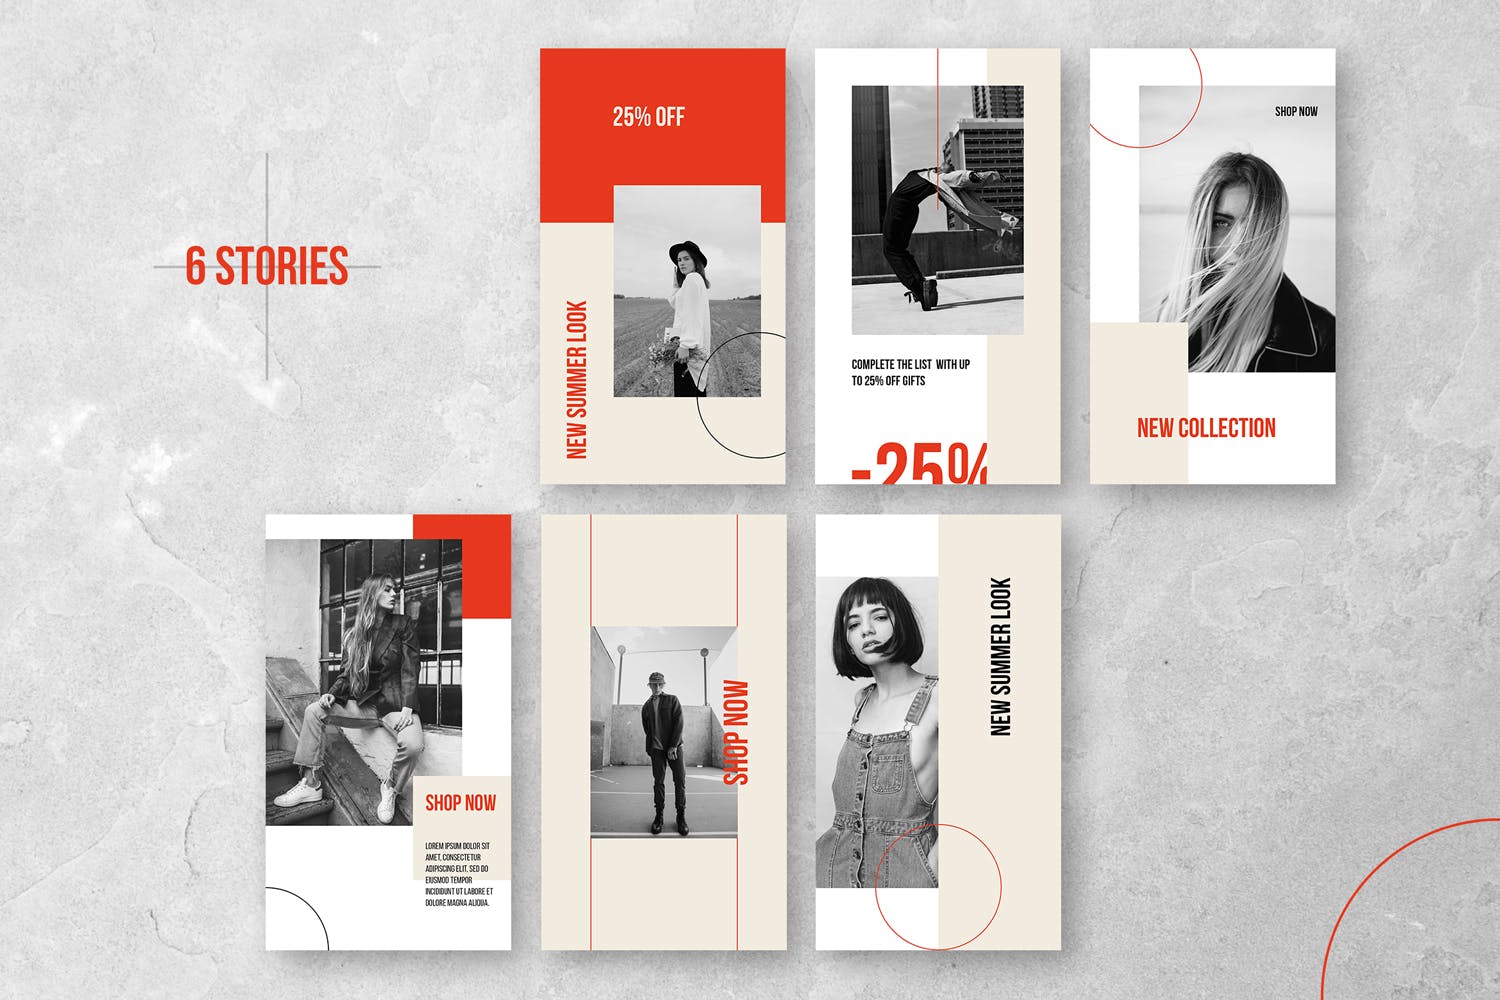 时装品牌促销Instagram宣传推广设计社交媒体素材 Instagram Stories Kit (Vol.44)设计素材模板